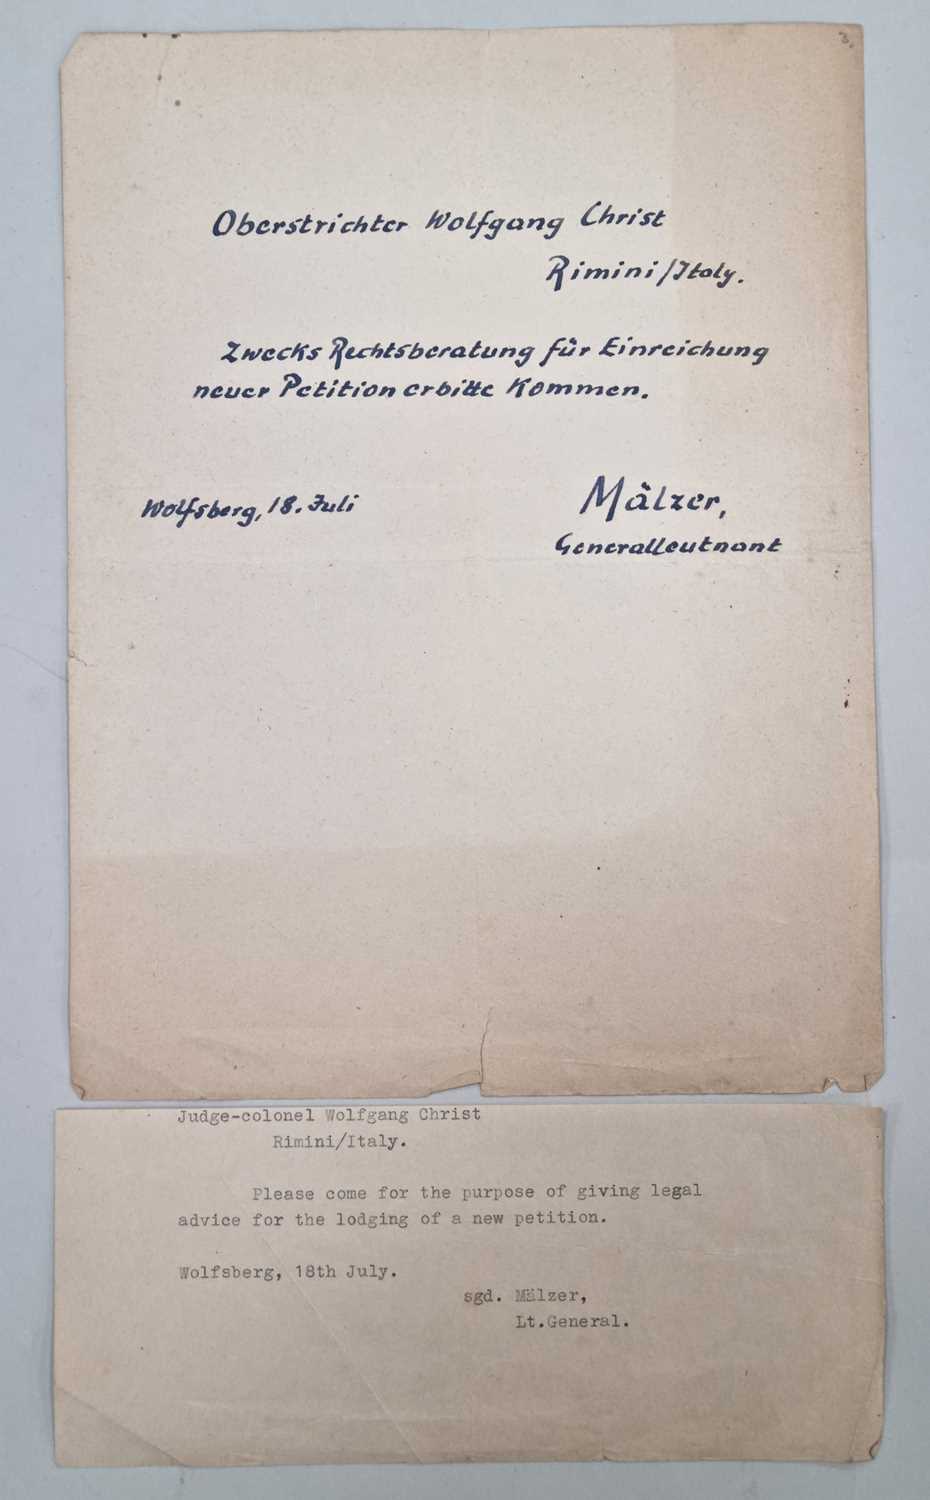 Kurt Mälzer, Gemran Luftwaffe General and War Criminal - Autograph telegram